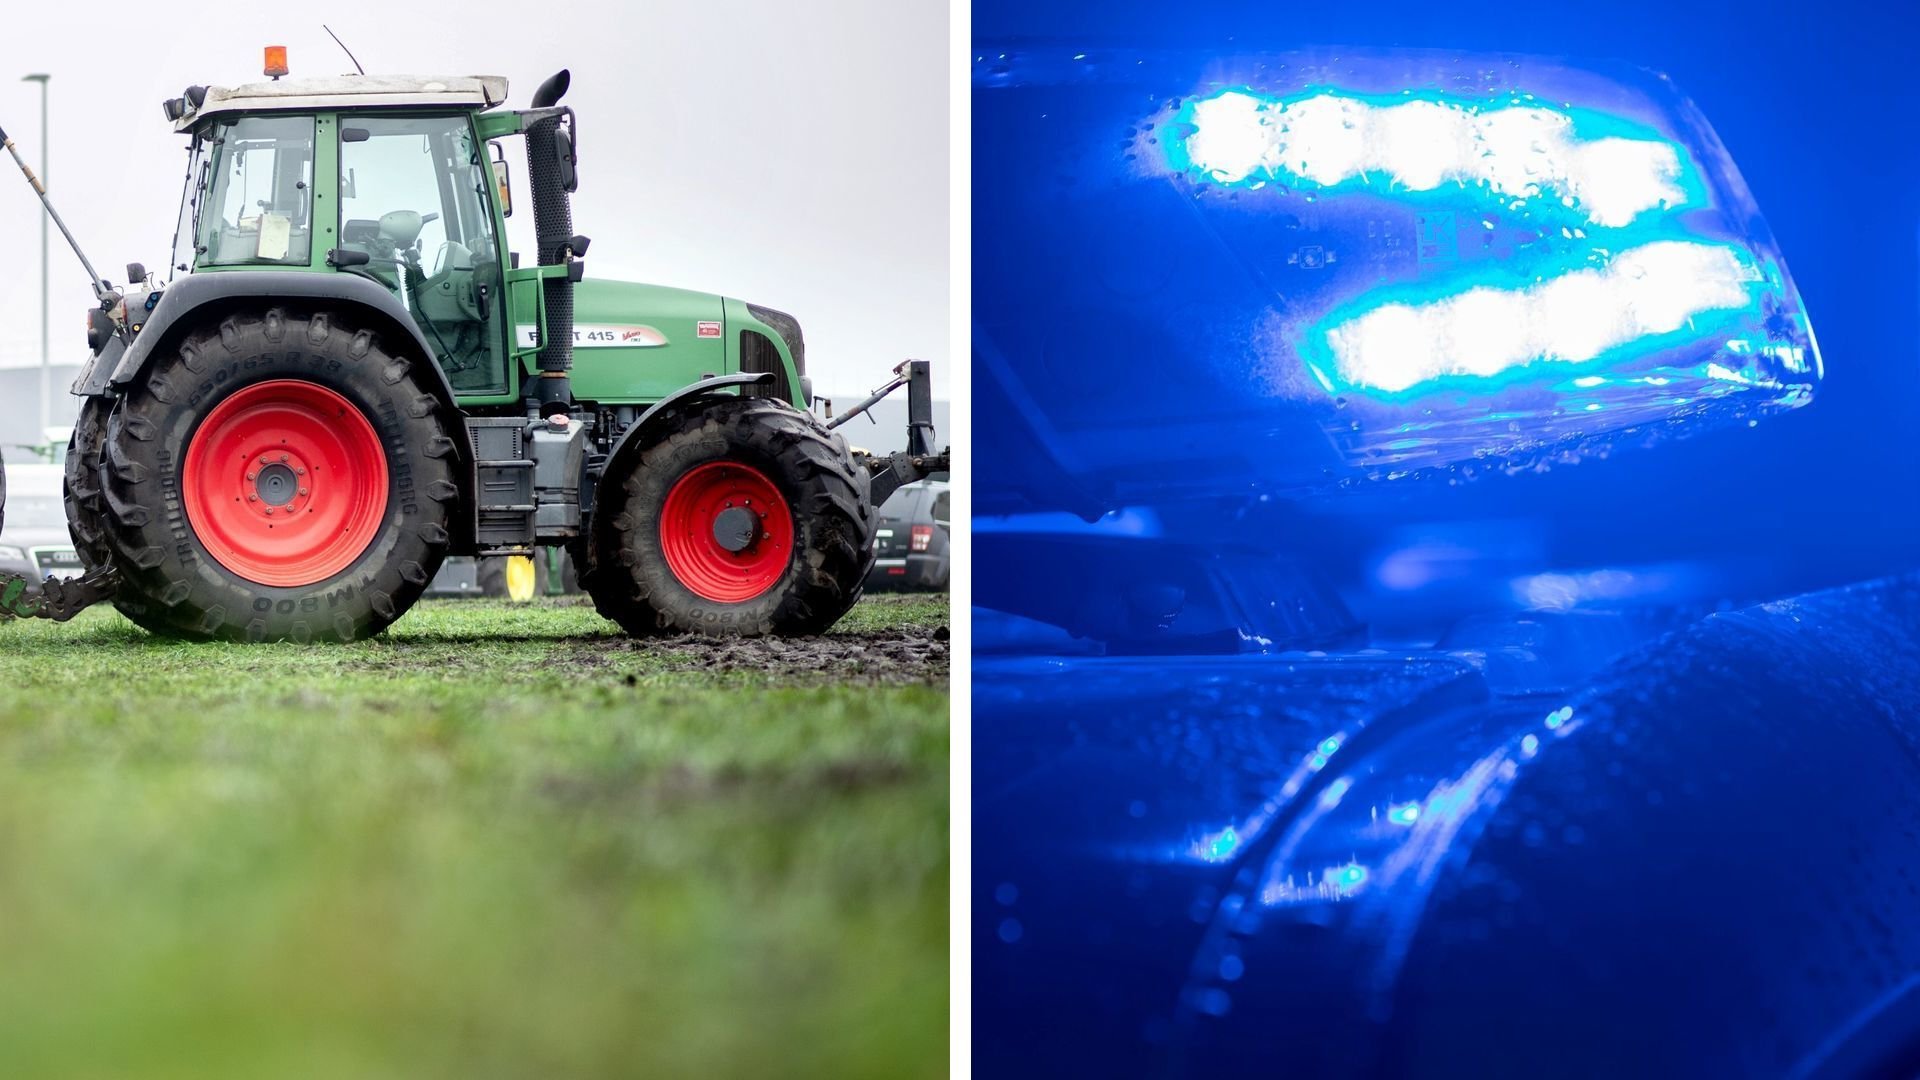 Traktoren auf Bauernhof zerlegt: Diebe stehlen teure Steuerungsgeräte